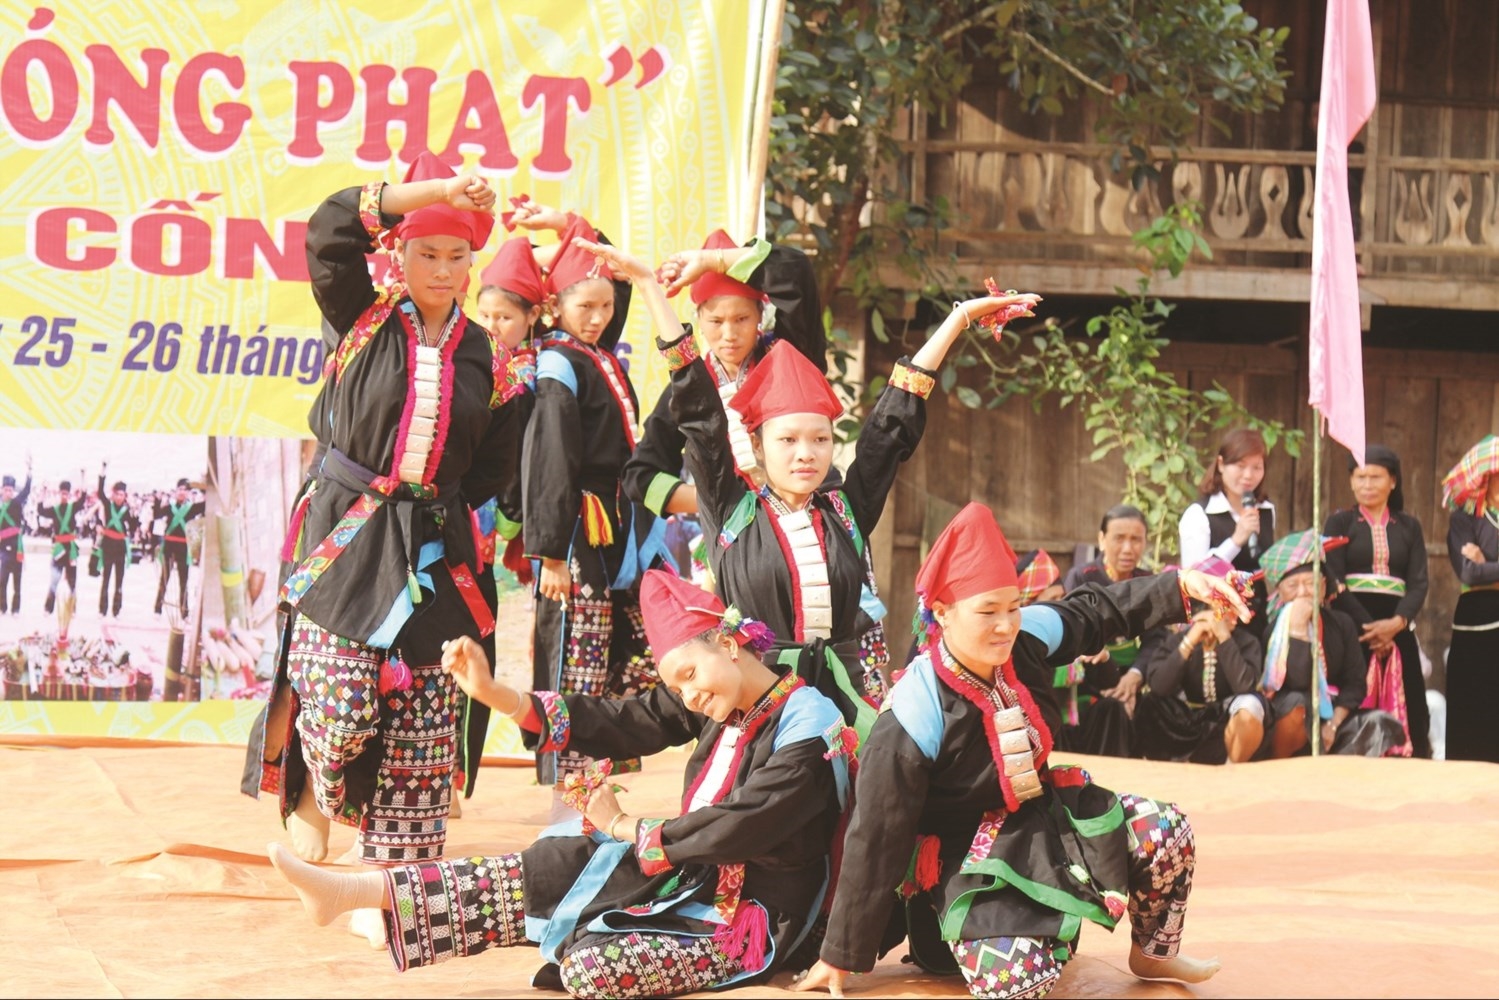 Đời sống vật chất và tinh thần của đồng bào các DTTS được nâng lên một bước. (Trong ảnh: Huyện Nậm Nhùn, tỉnh Lai Châu tổ chức nhiều hoạt động giữ gìn bản sắc văn hóa của các dân tộc thông qua các lễ hội - Ảnh: H.D)